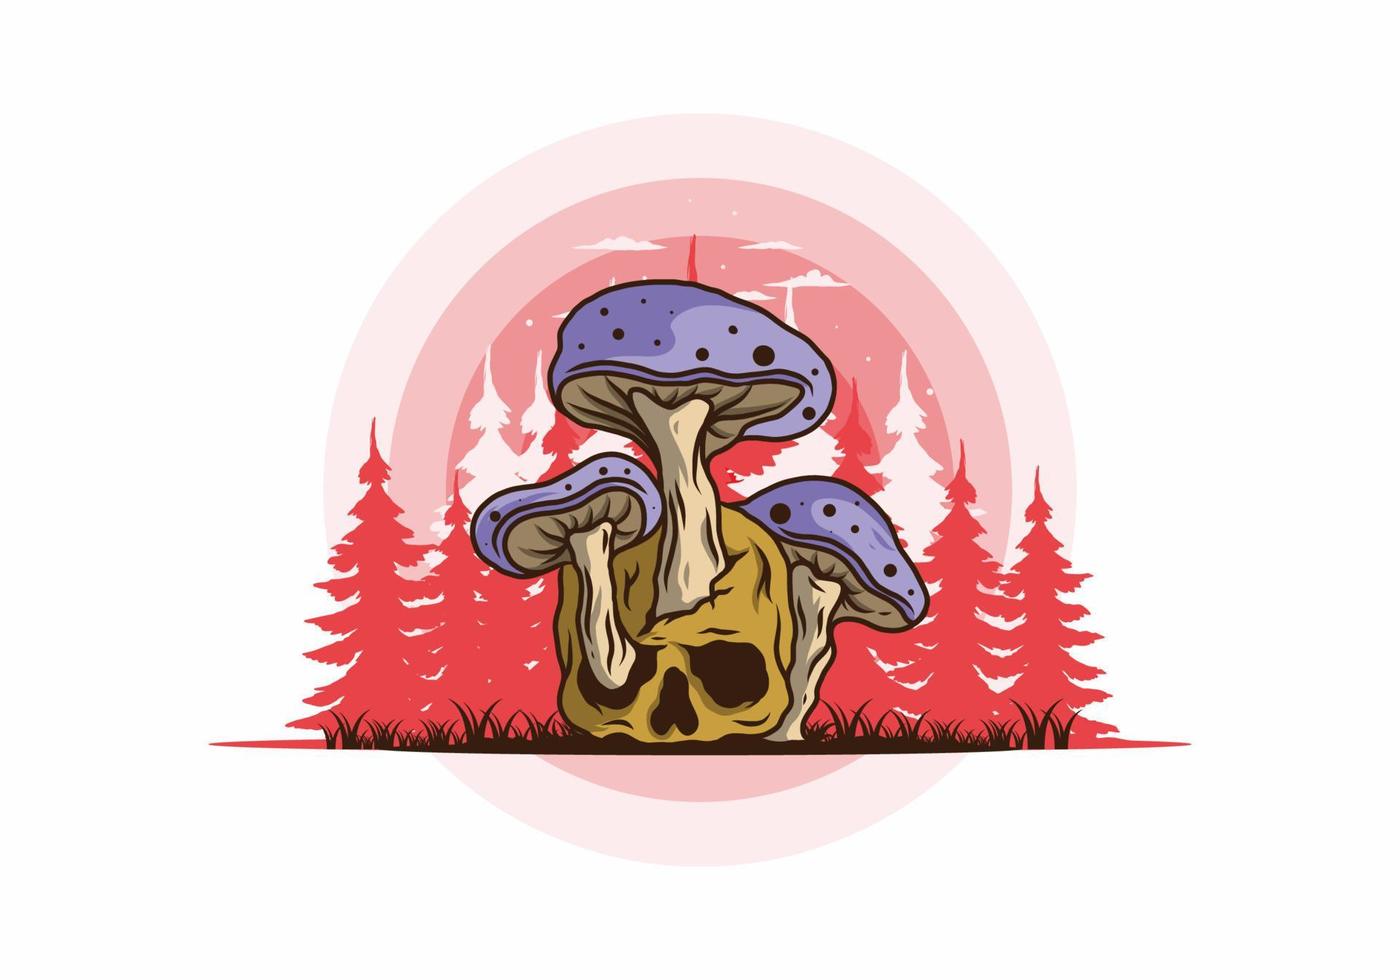 paddenstoel groeien op menselijke schedel illustratie vector